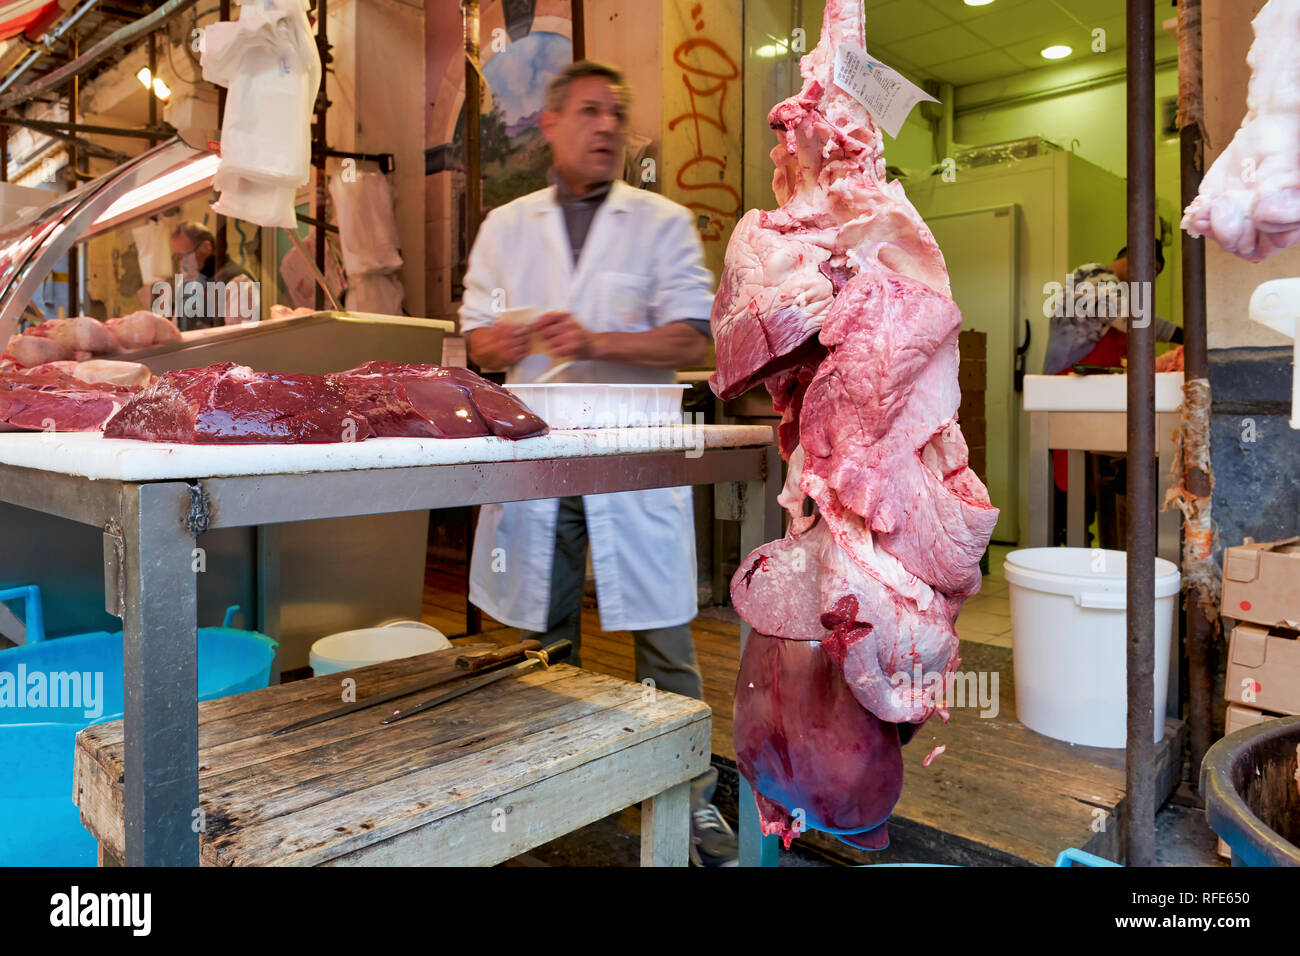 Piscaria, le marché quotidien de la rue à Catane Sicile Italie. Poisson frais, viande, légumes Banque D'Images